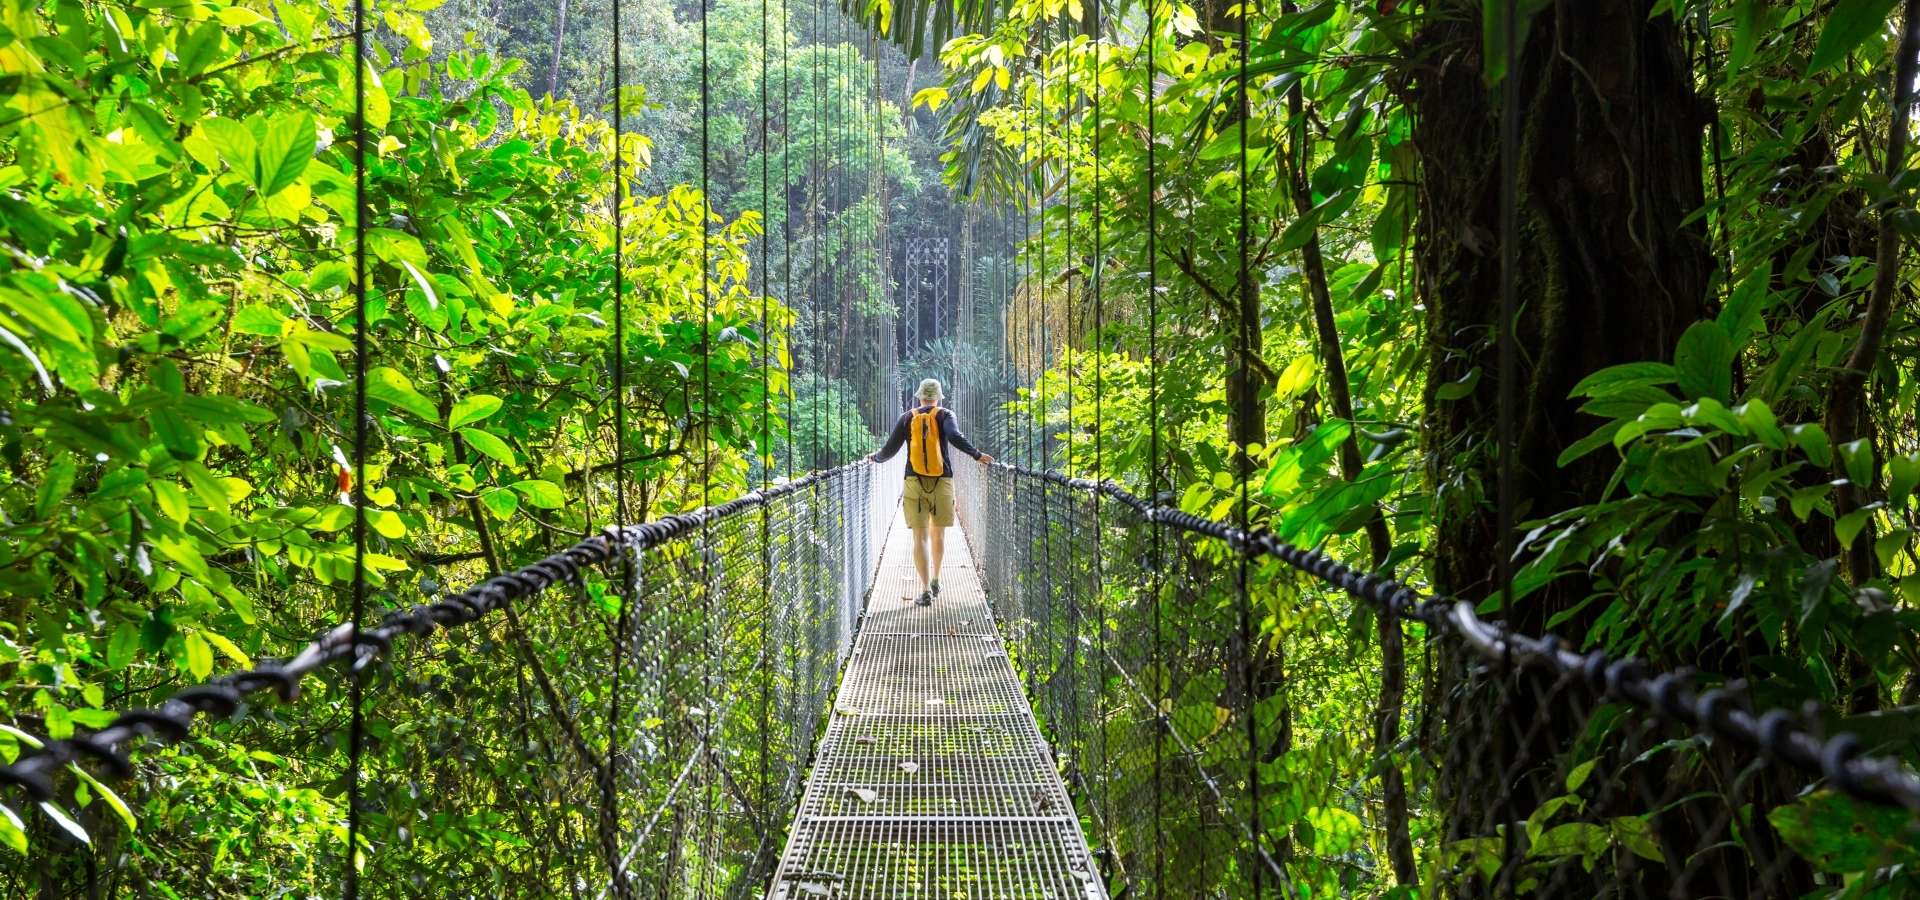 Costa Rican luontomatka - riippusilta Monteverdessä